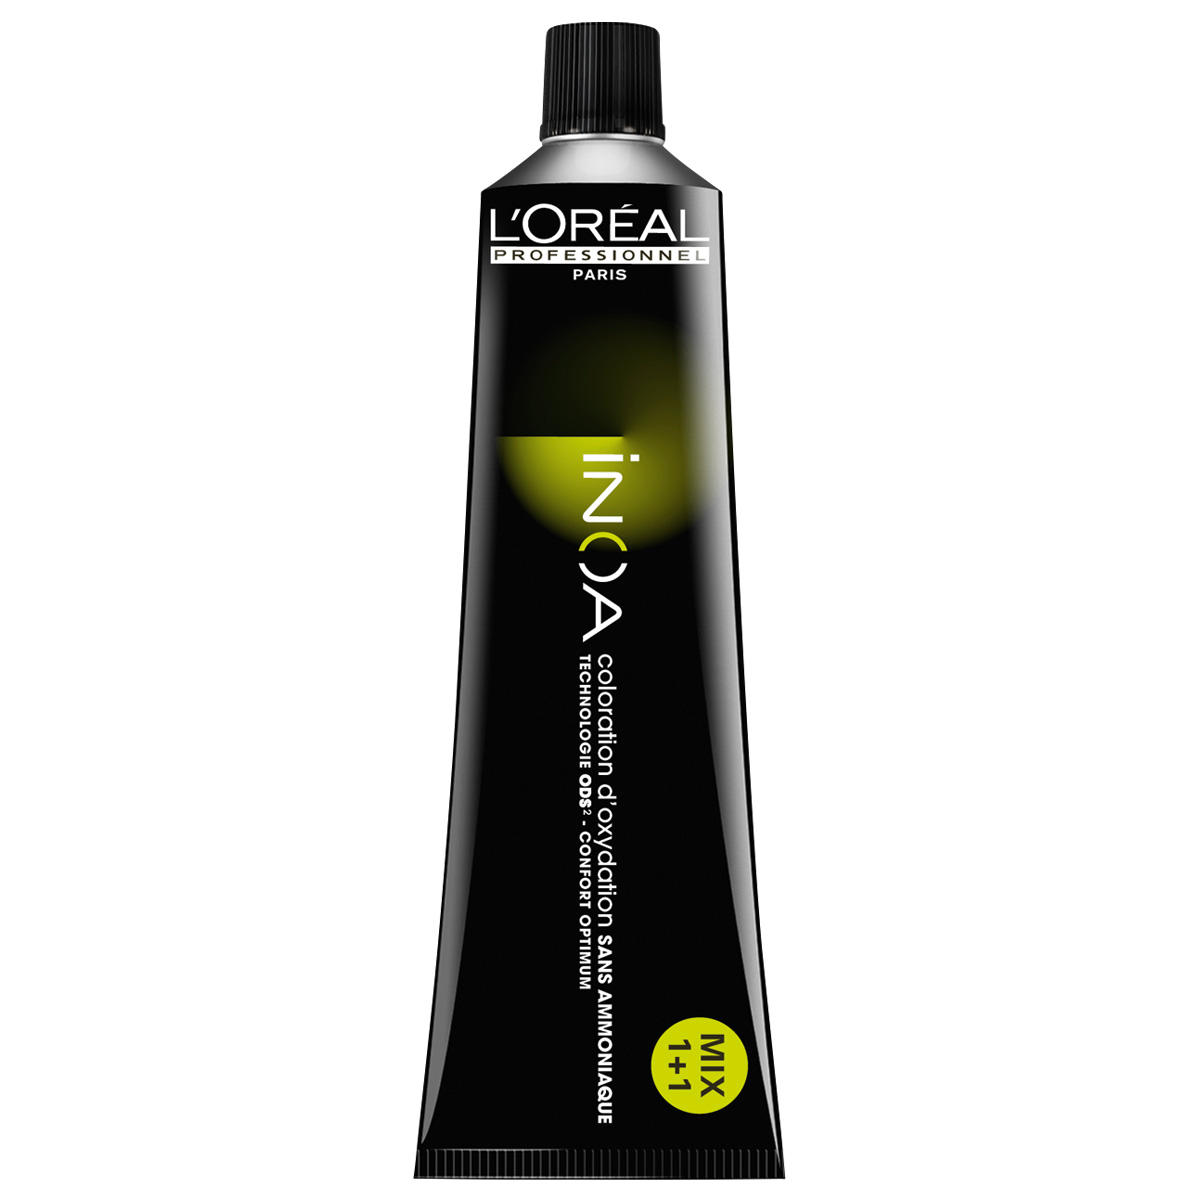 L'Oréal Professionnel Paris Coloration 3 Marrón oscuro, tubo 60 ml